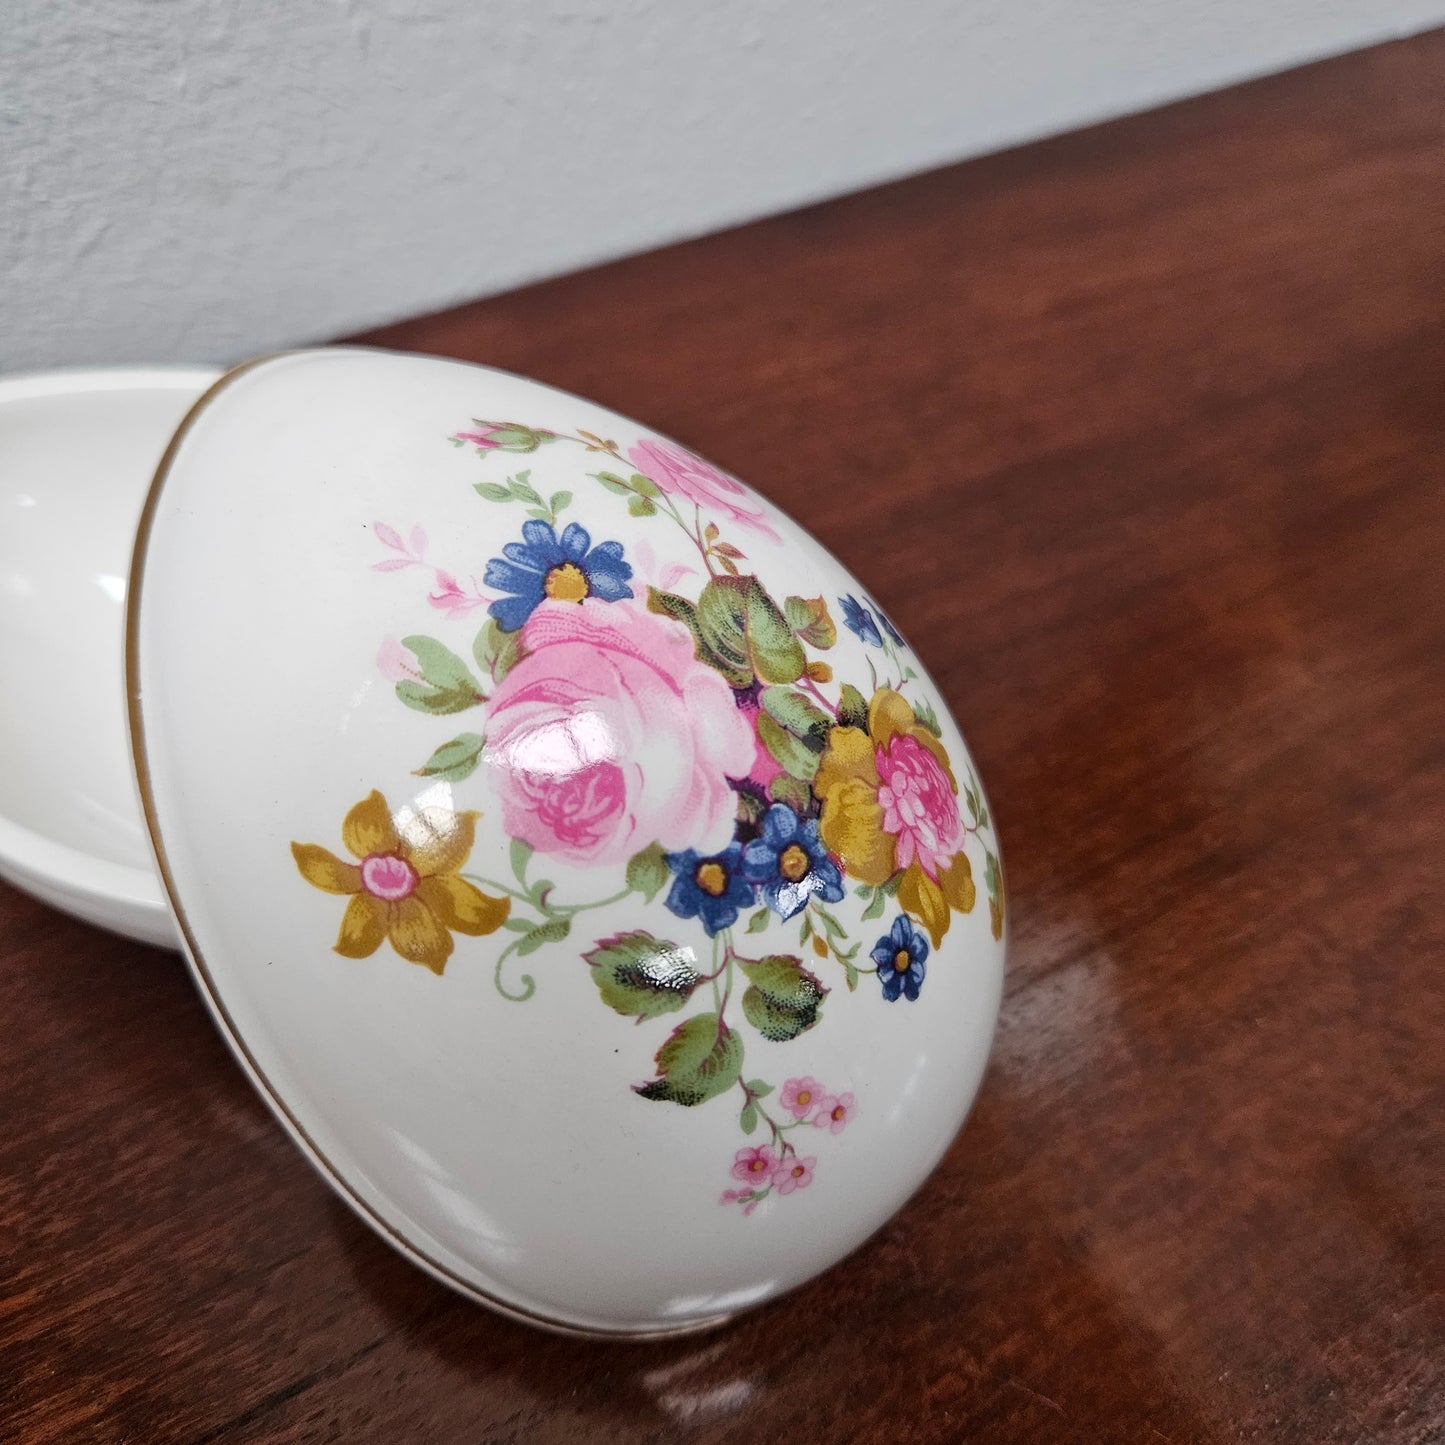 Pretty Floral "Sadler" Ceramic Egg Trinket Box